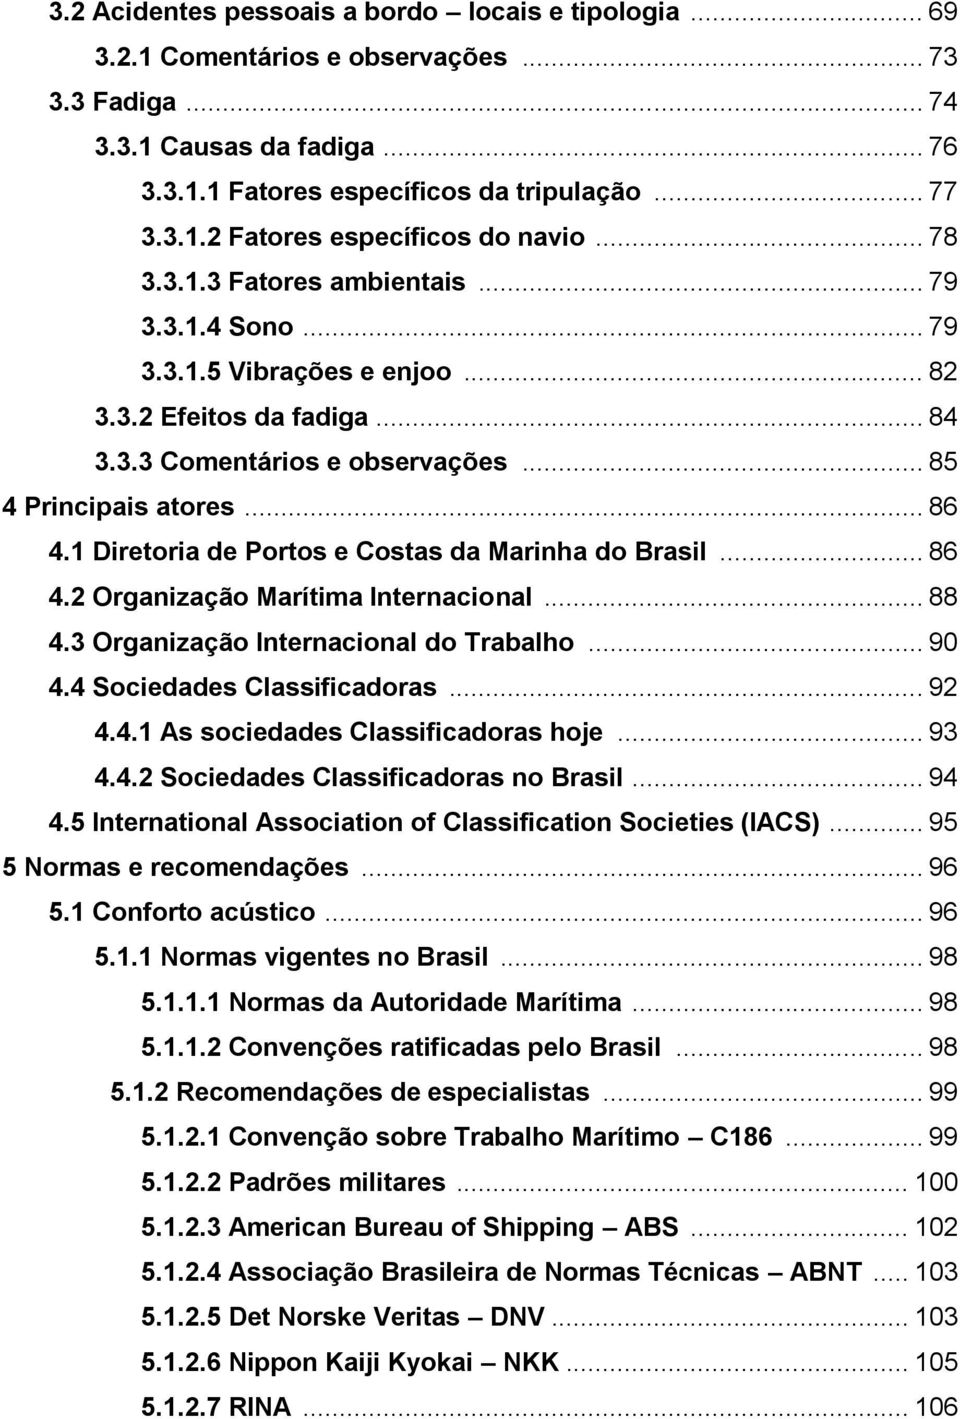 1 Diretoria de Portos e Costas da Marinha do Brasil... 86 4.2 Organização Marítima Internacional... 88 4.3 Organização Internacional do Trabalho... 90 4.4 Sociedades Classificadoras... 92 4.4.1 As sociedades Classificadoras hoje.